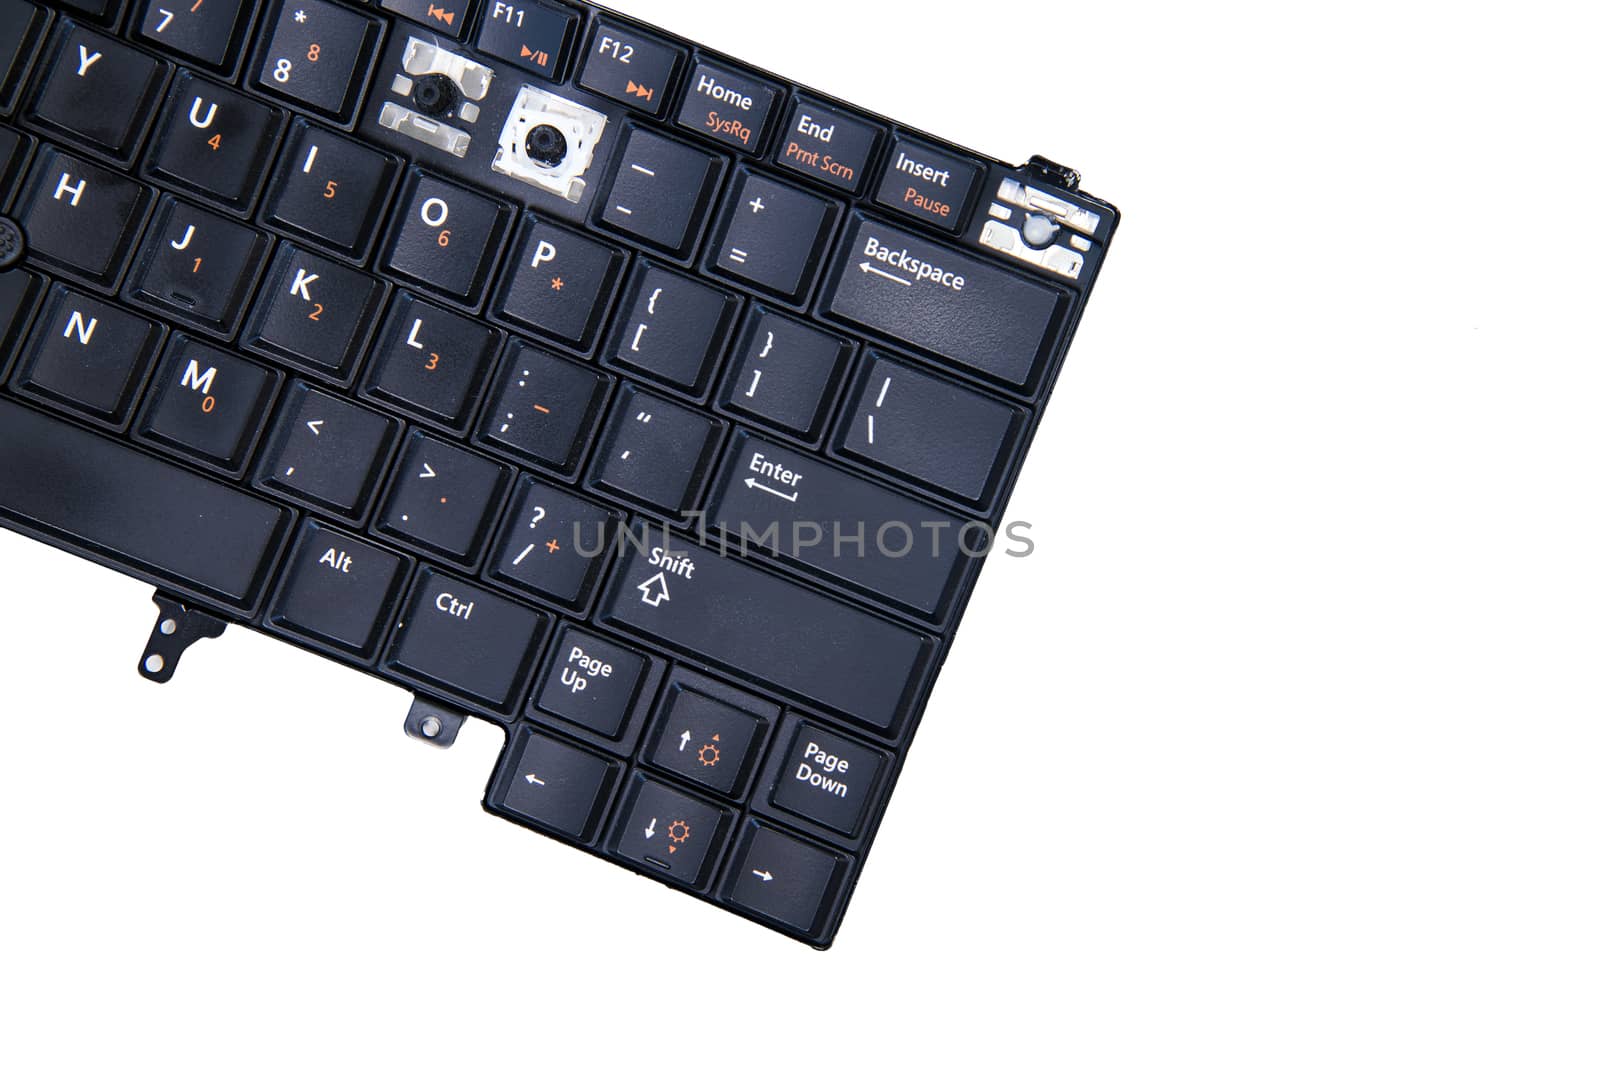 Damaged Laptop keyboard part isolateon white background by jakgree